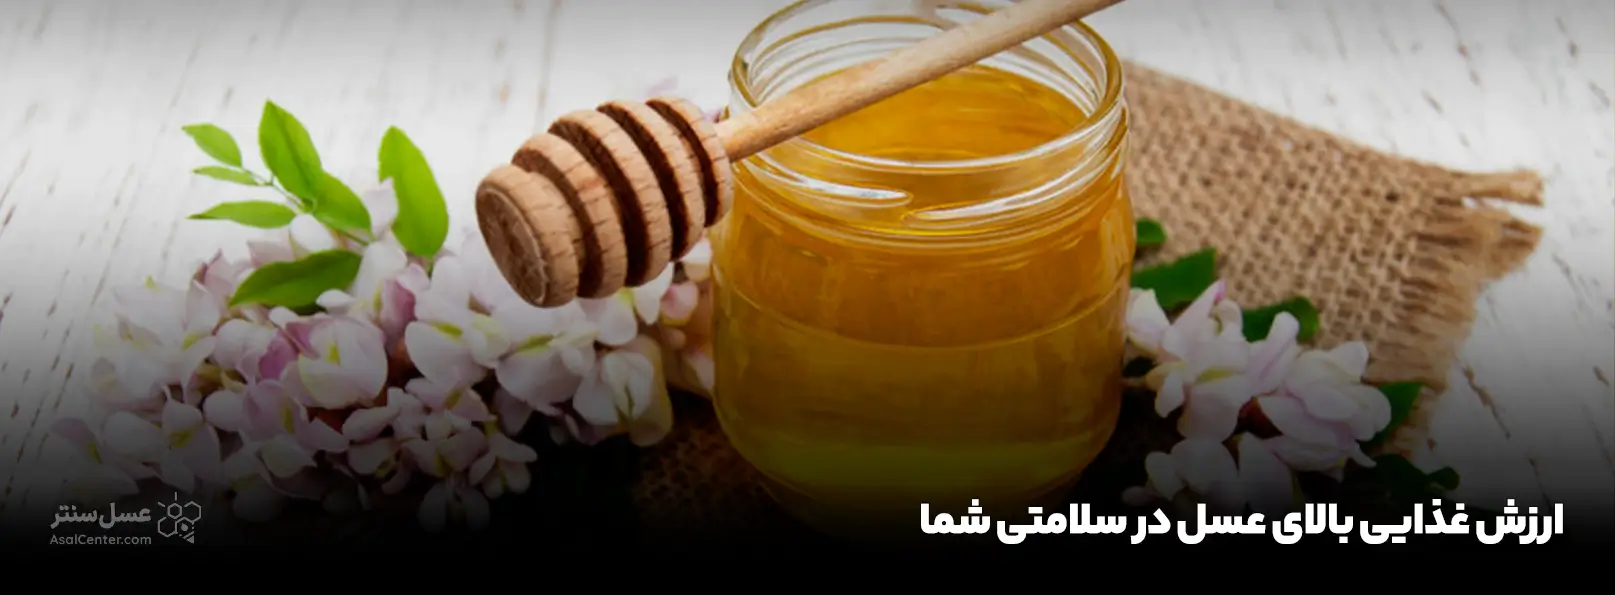 ارزش غذایی بالای عسل در سلامتی شما